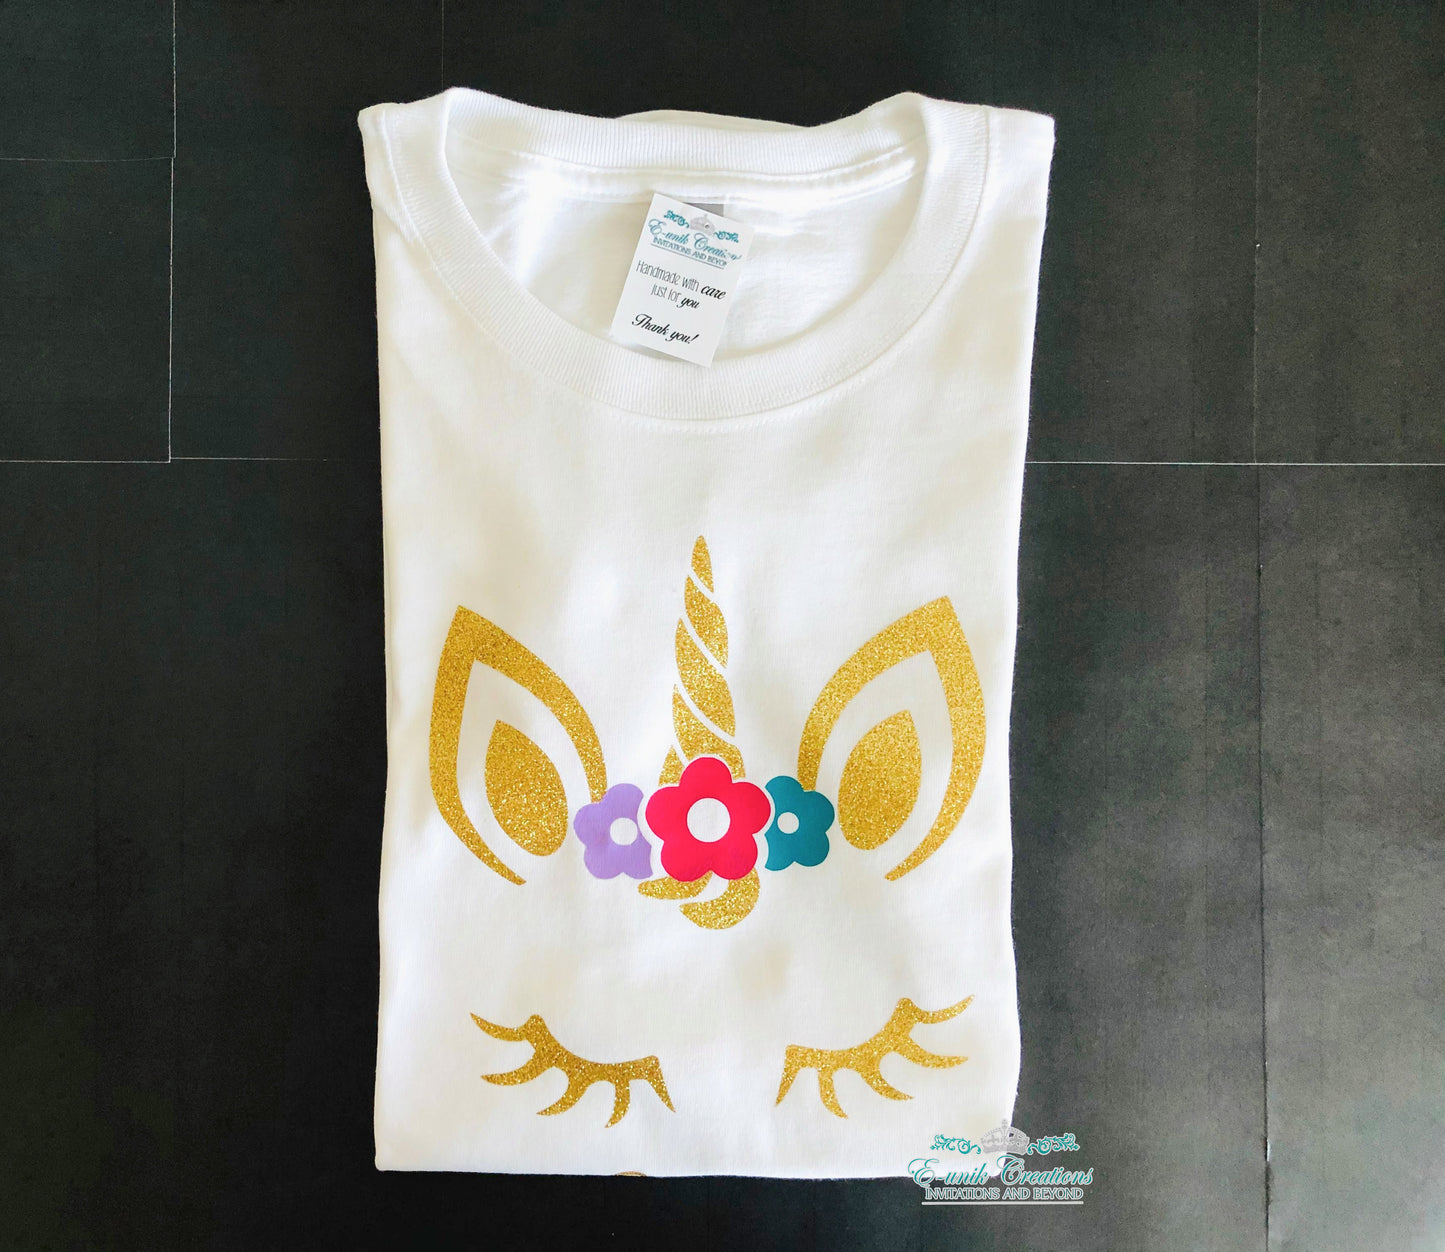 Personalized Glitter Unicorn Birthday T-shirt